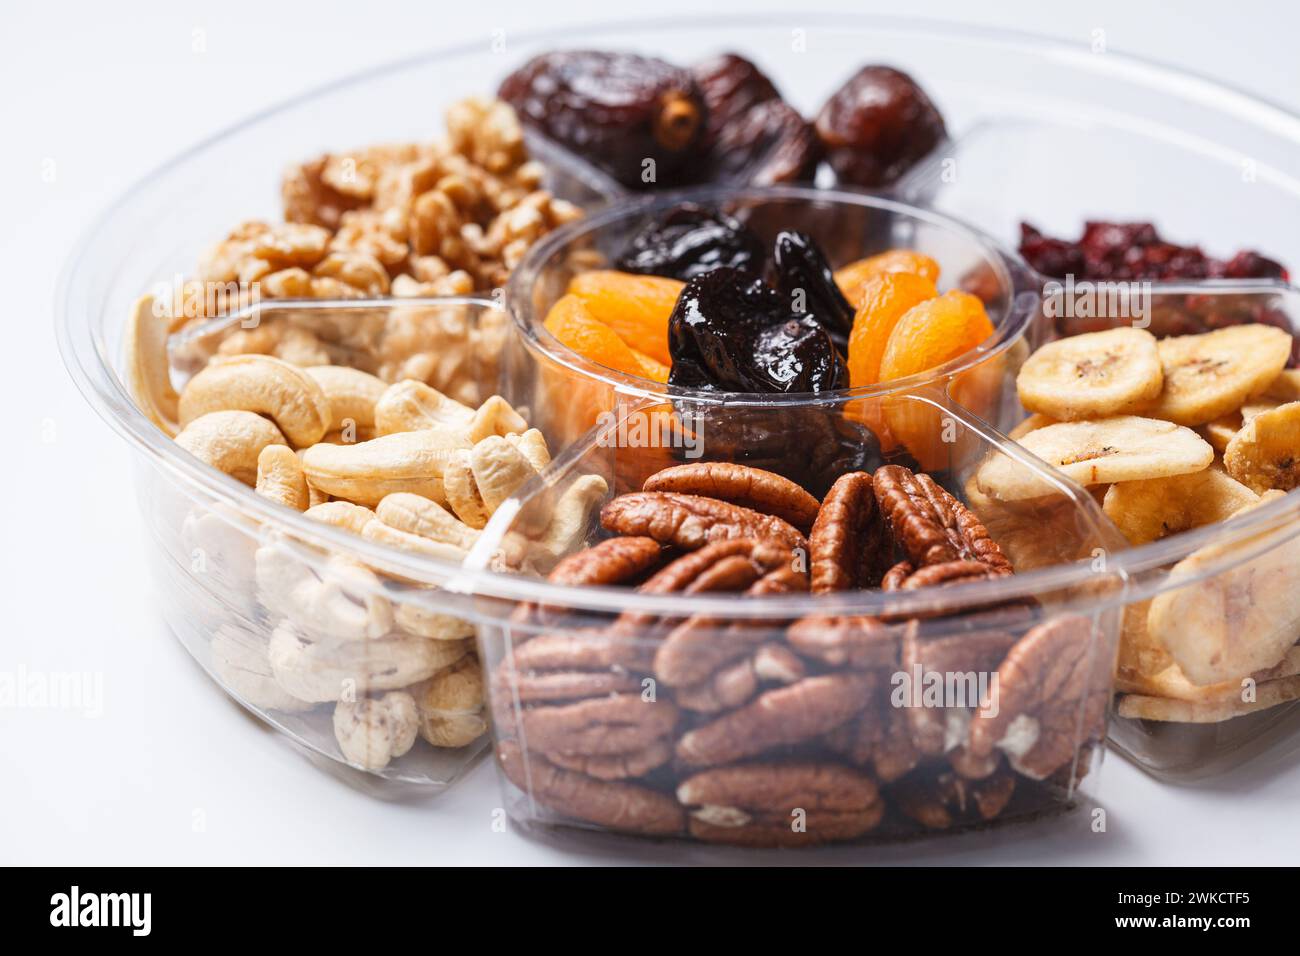 Fruits secs et noix sur une assiette pour célébrer la fête juive tu Bi Shevat. Banque D'Images